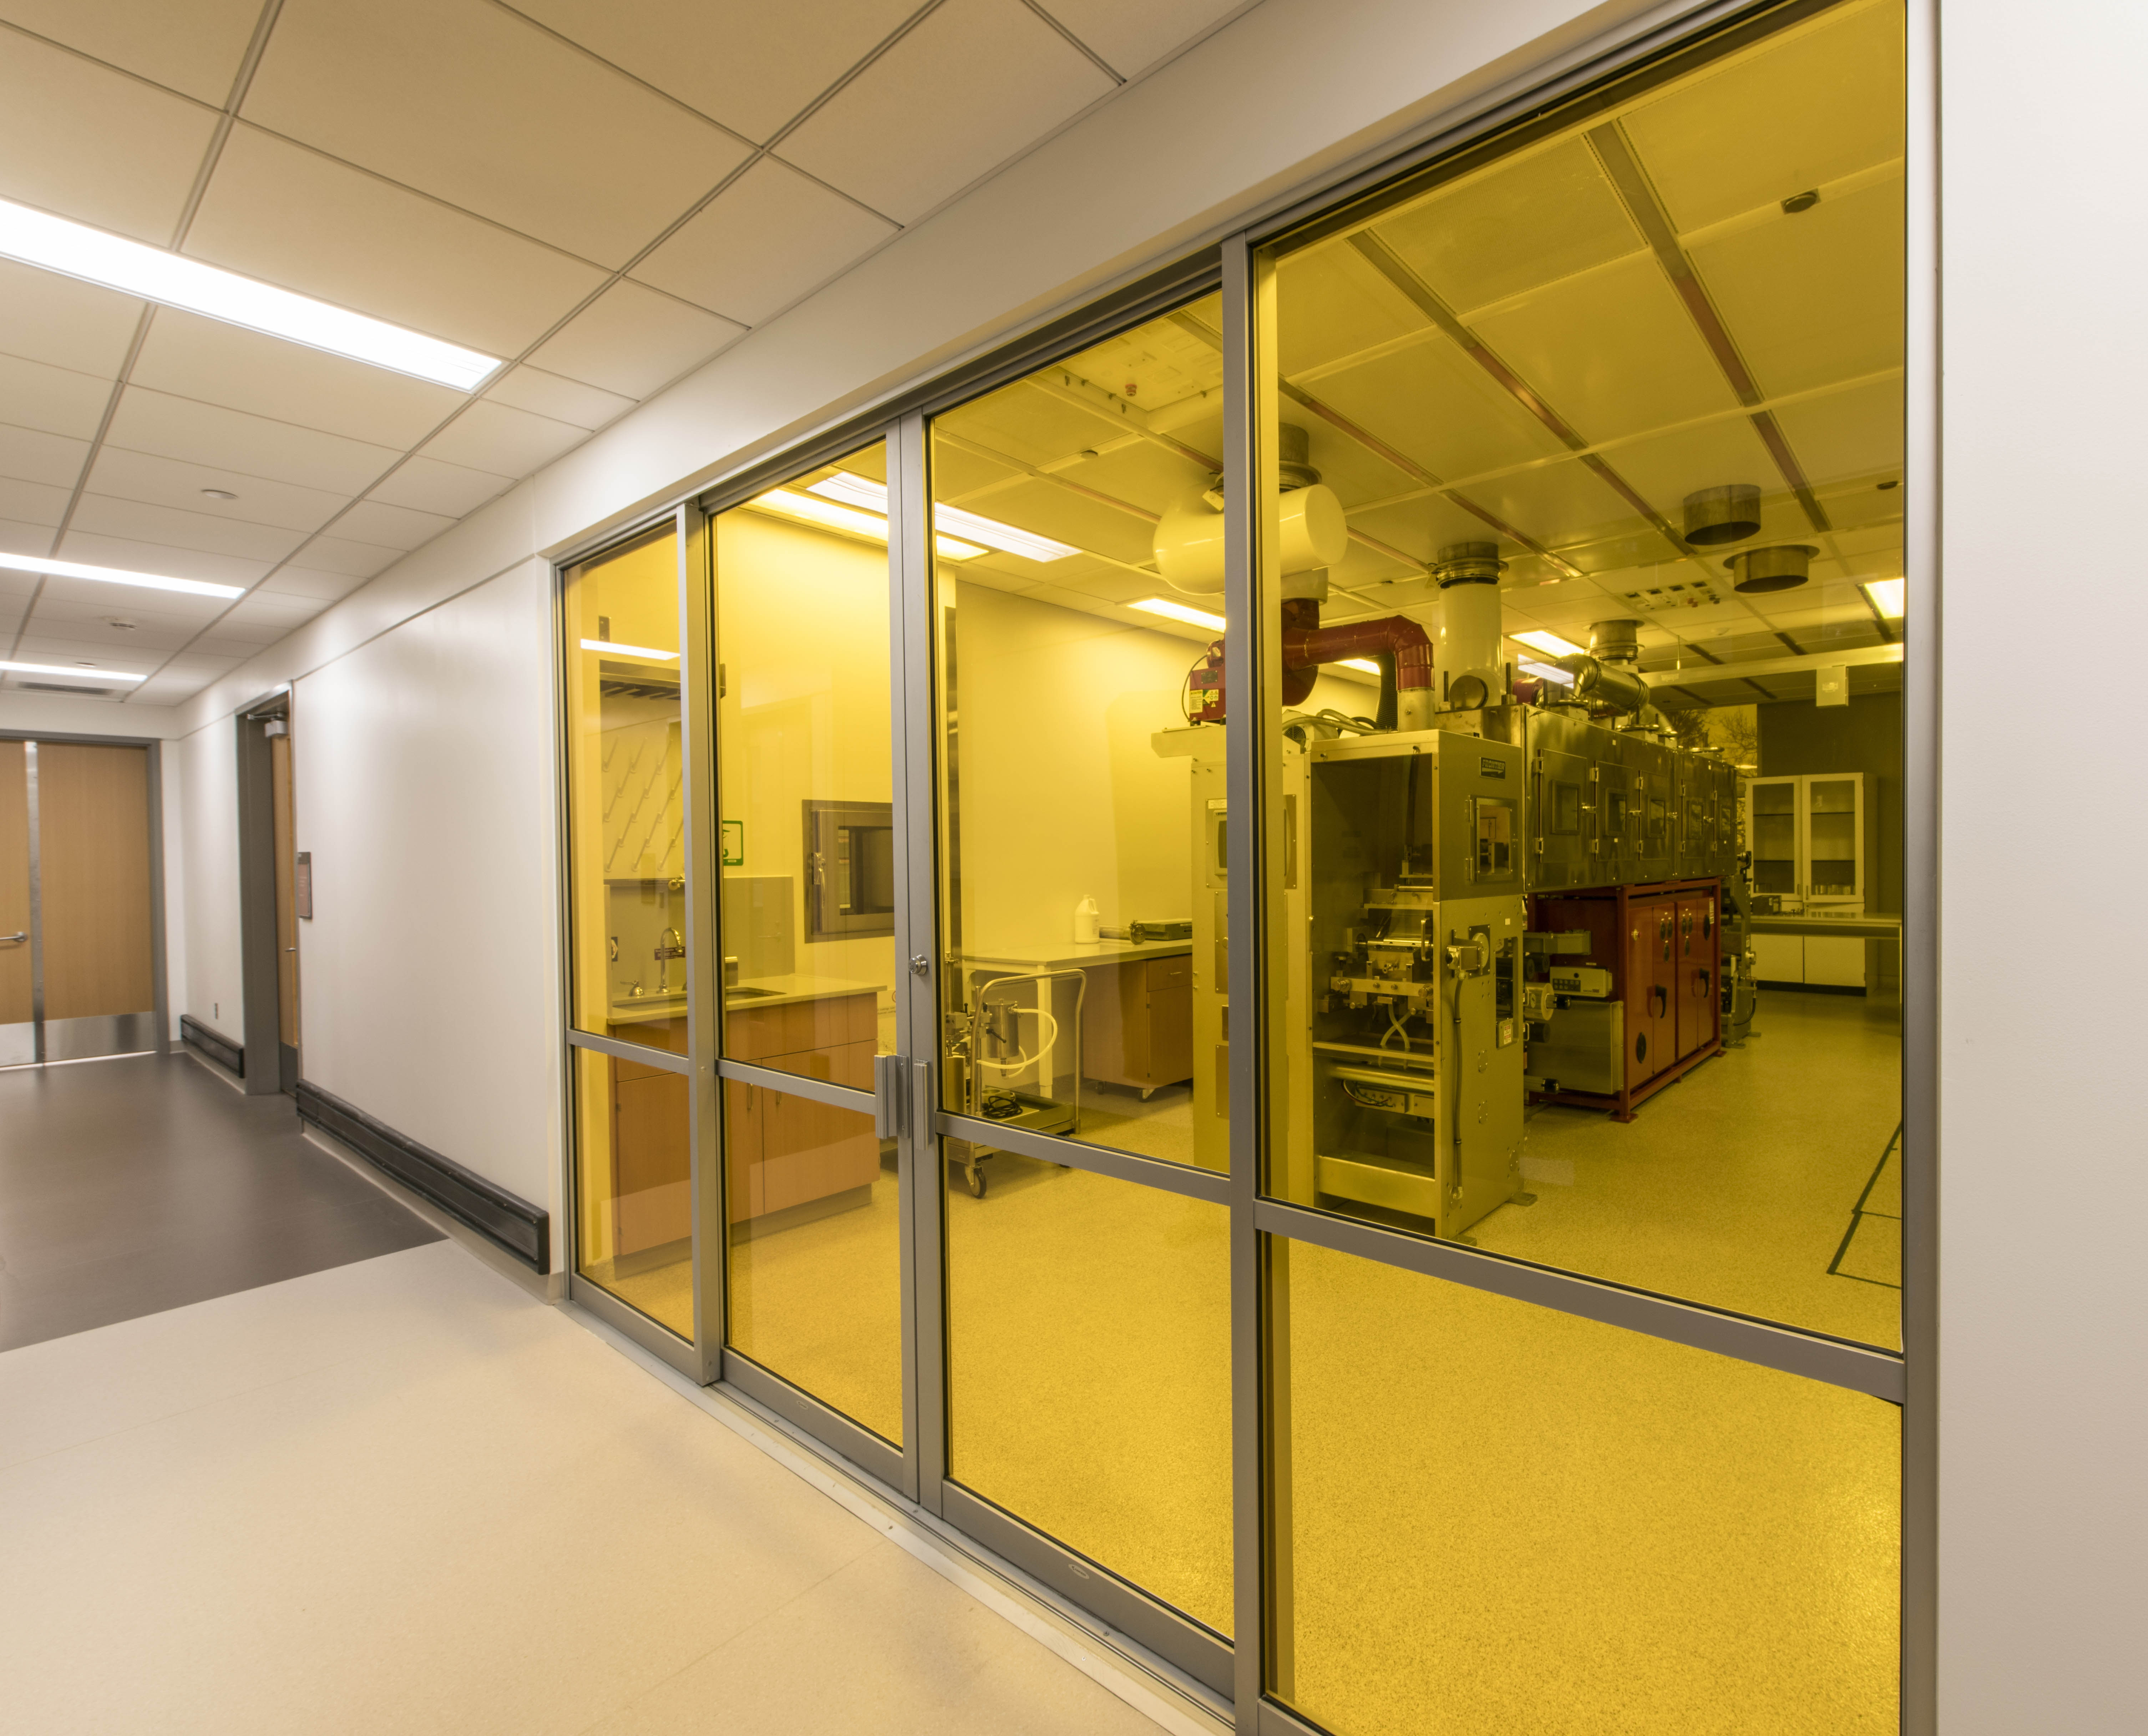 lab equipment through a hallway window